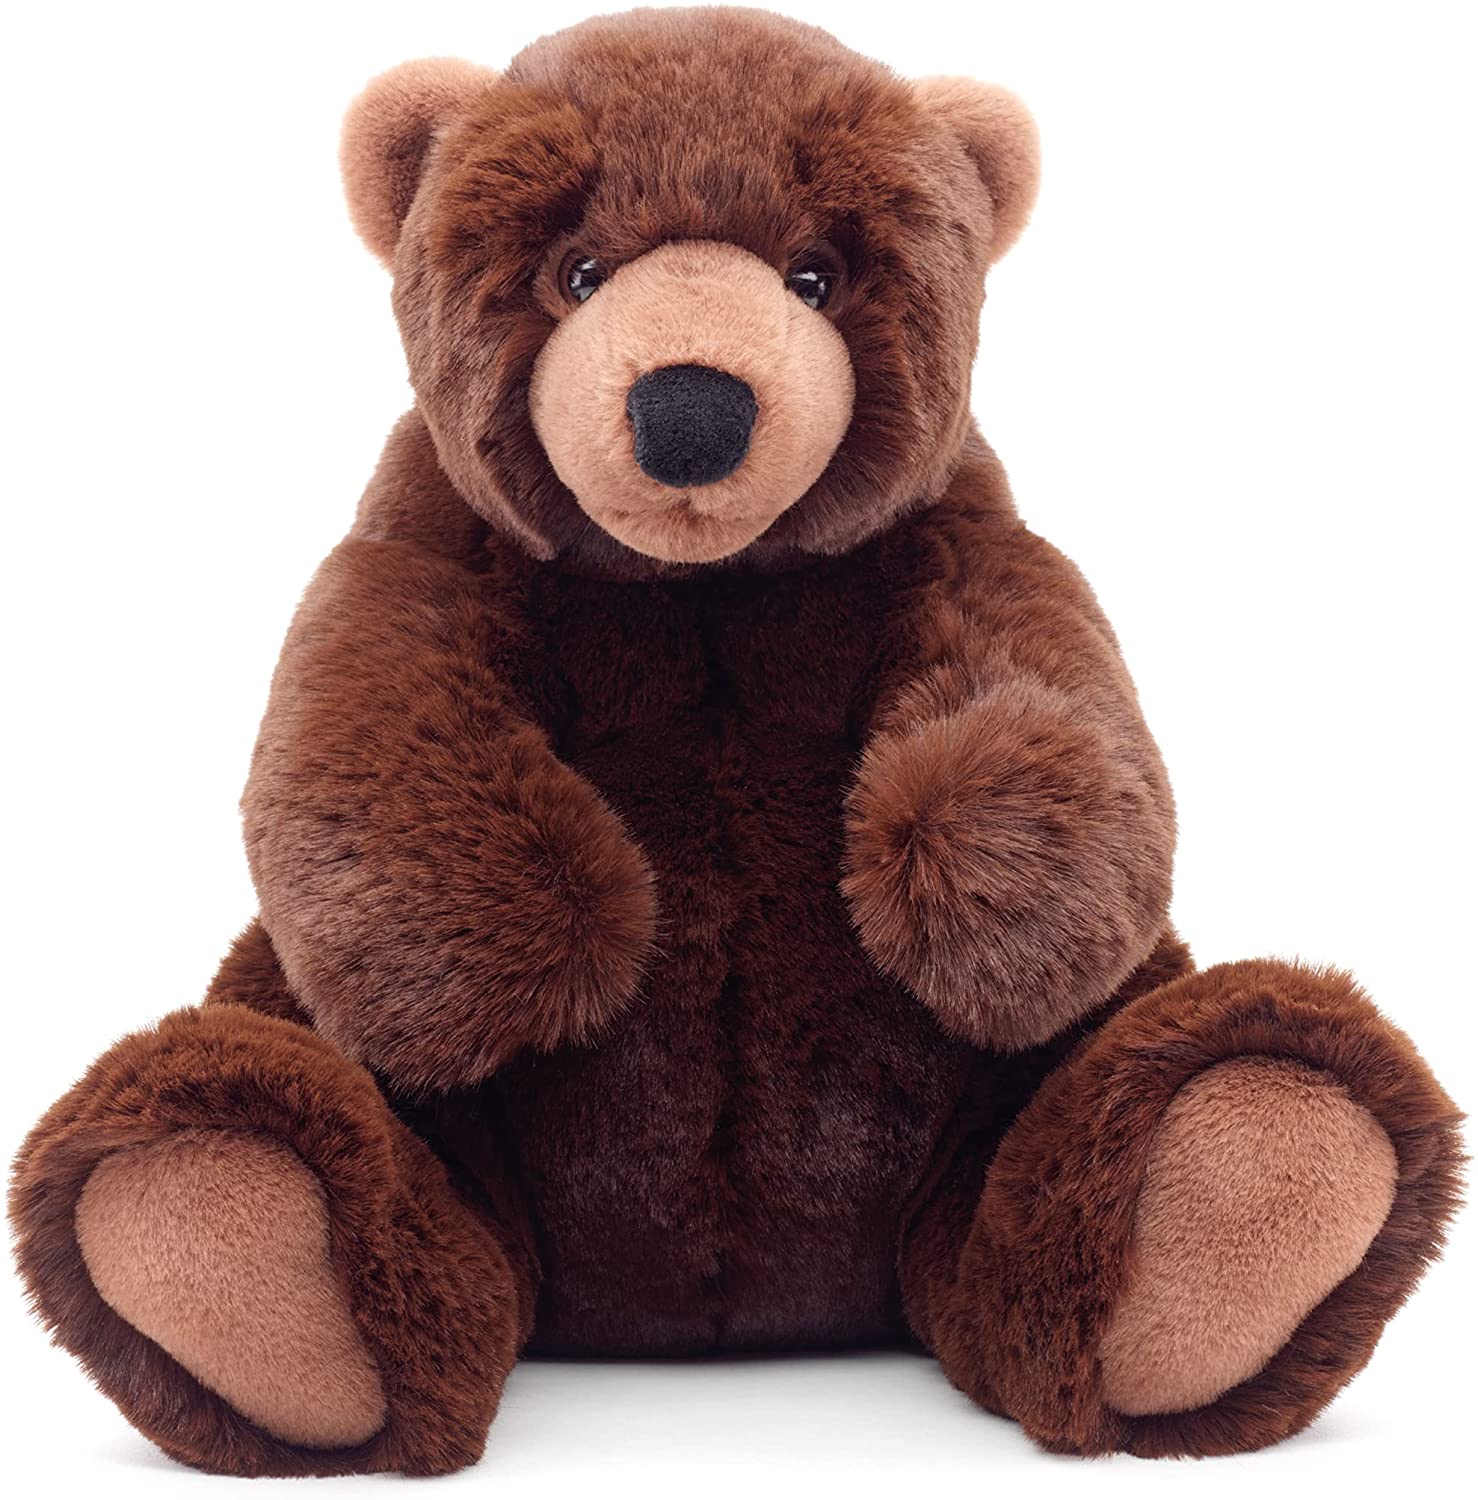 Uni-Toys - Braunbär groß, sitzend - 'Mika' - superweich - 29 cm (Höhe) - Plüsch-Bär, Teddy, Teddybär - Plüschtier, Kuscheltier 